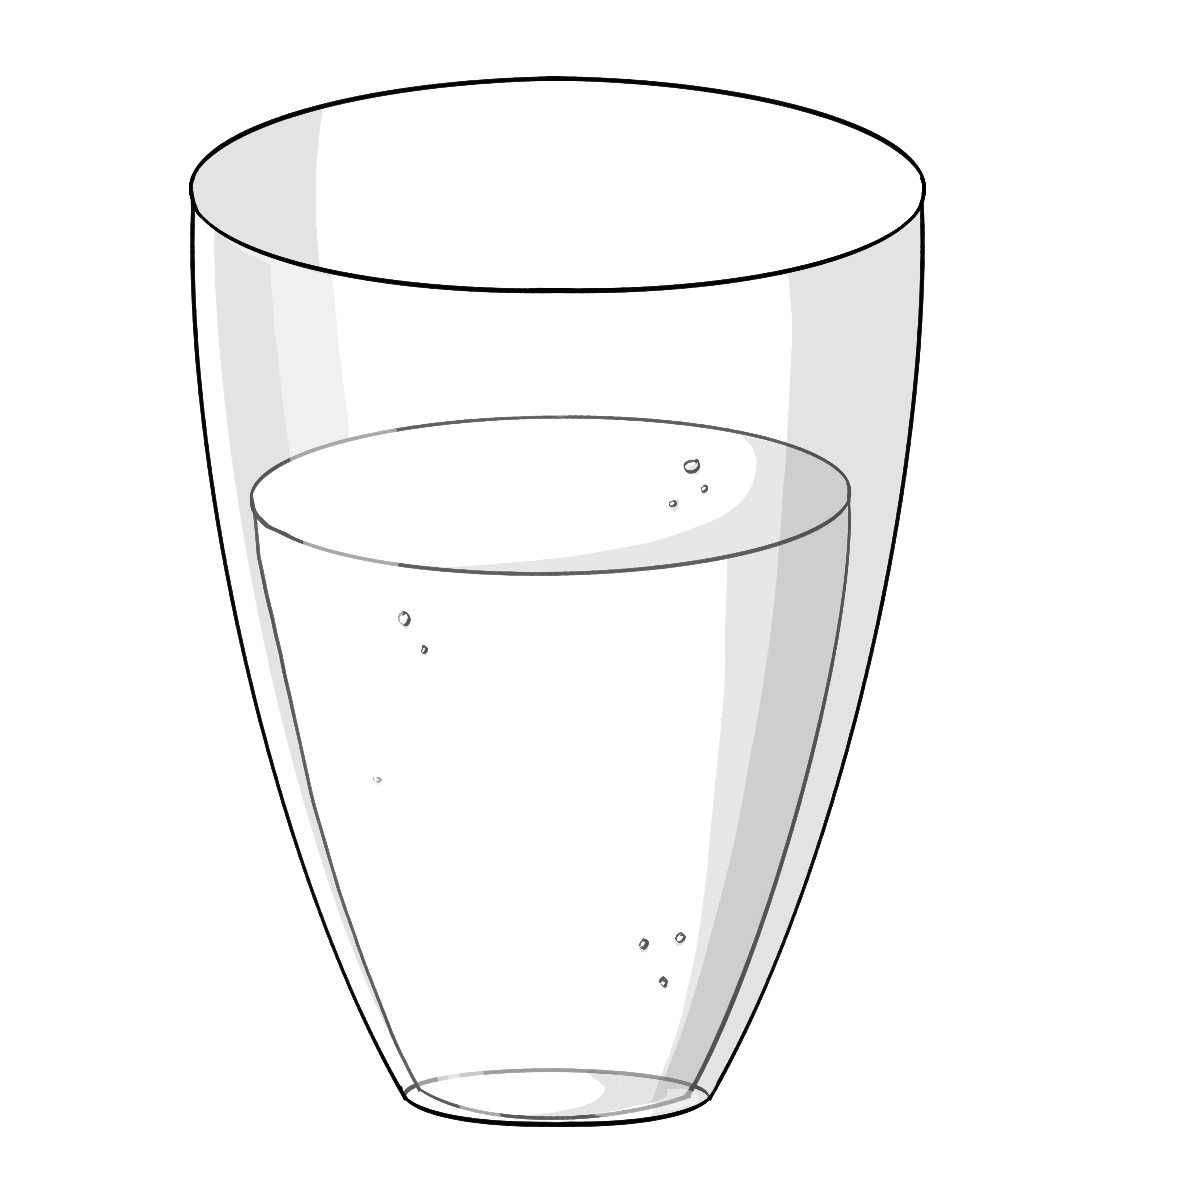 Ein Glas mit Wasser